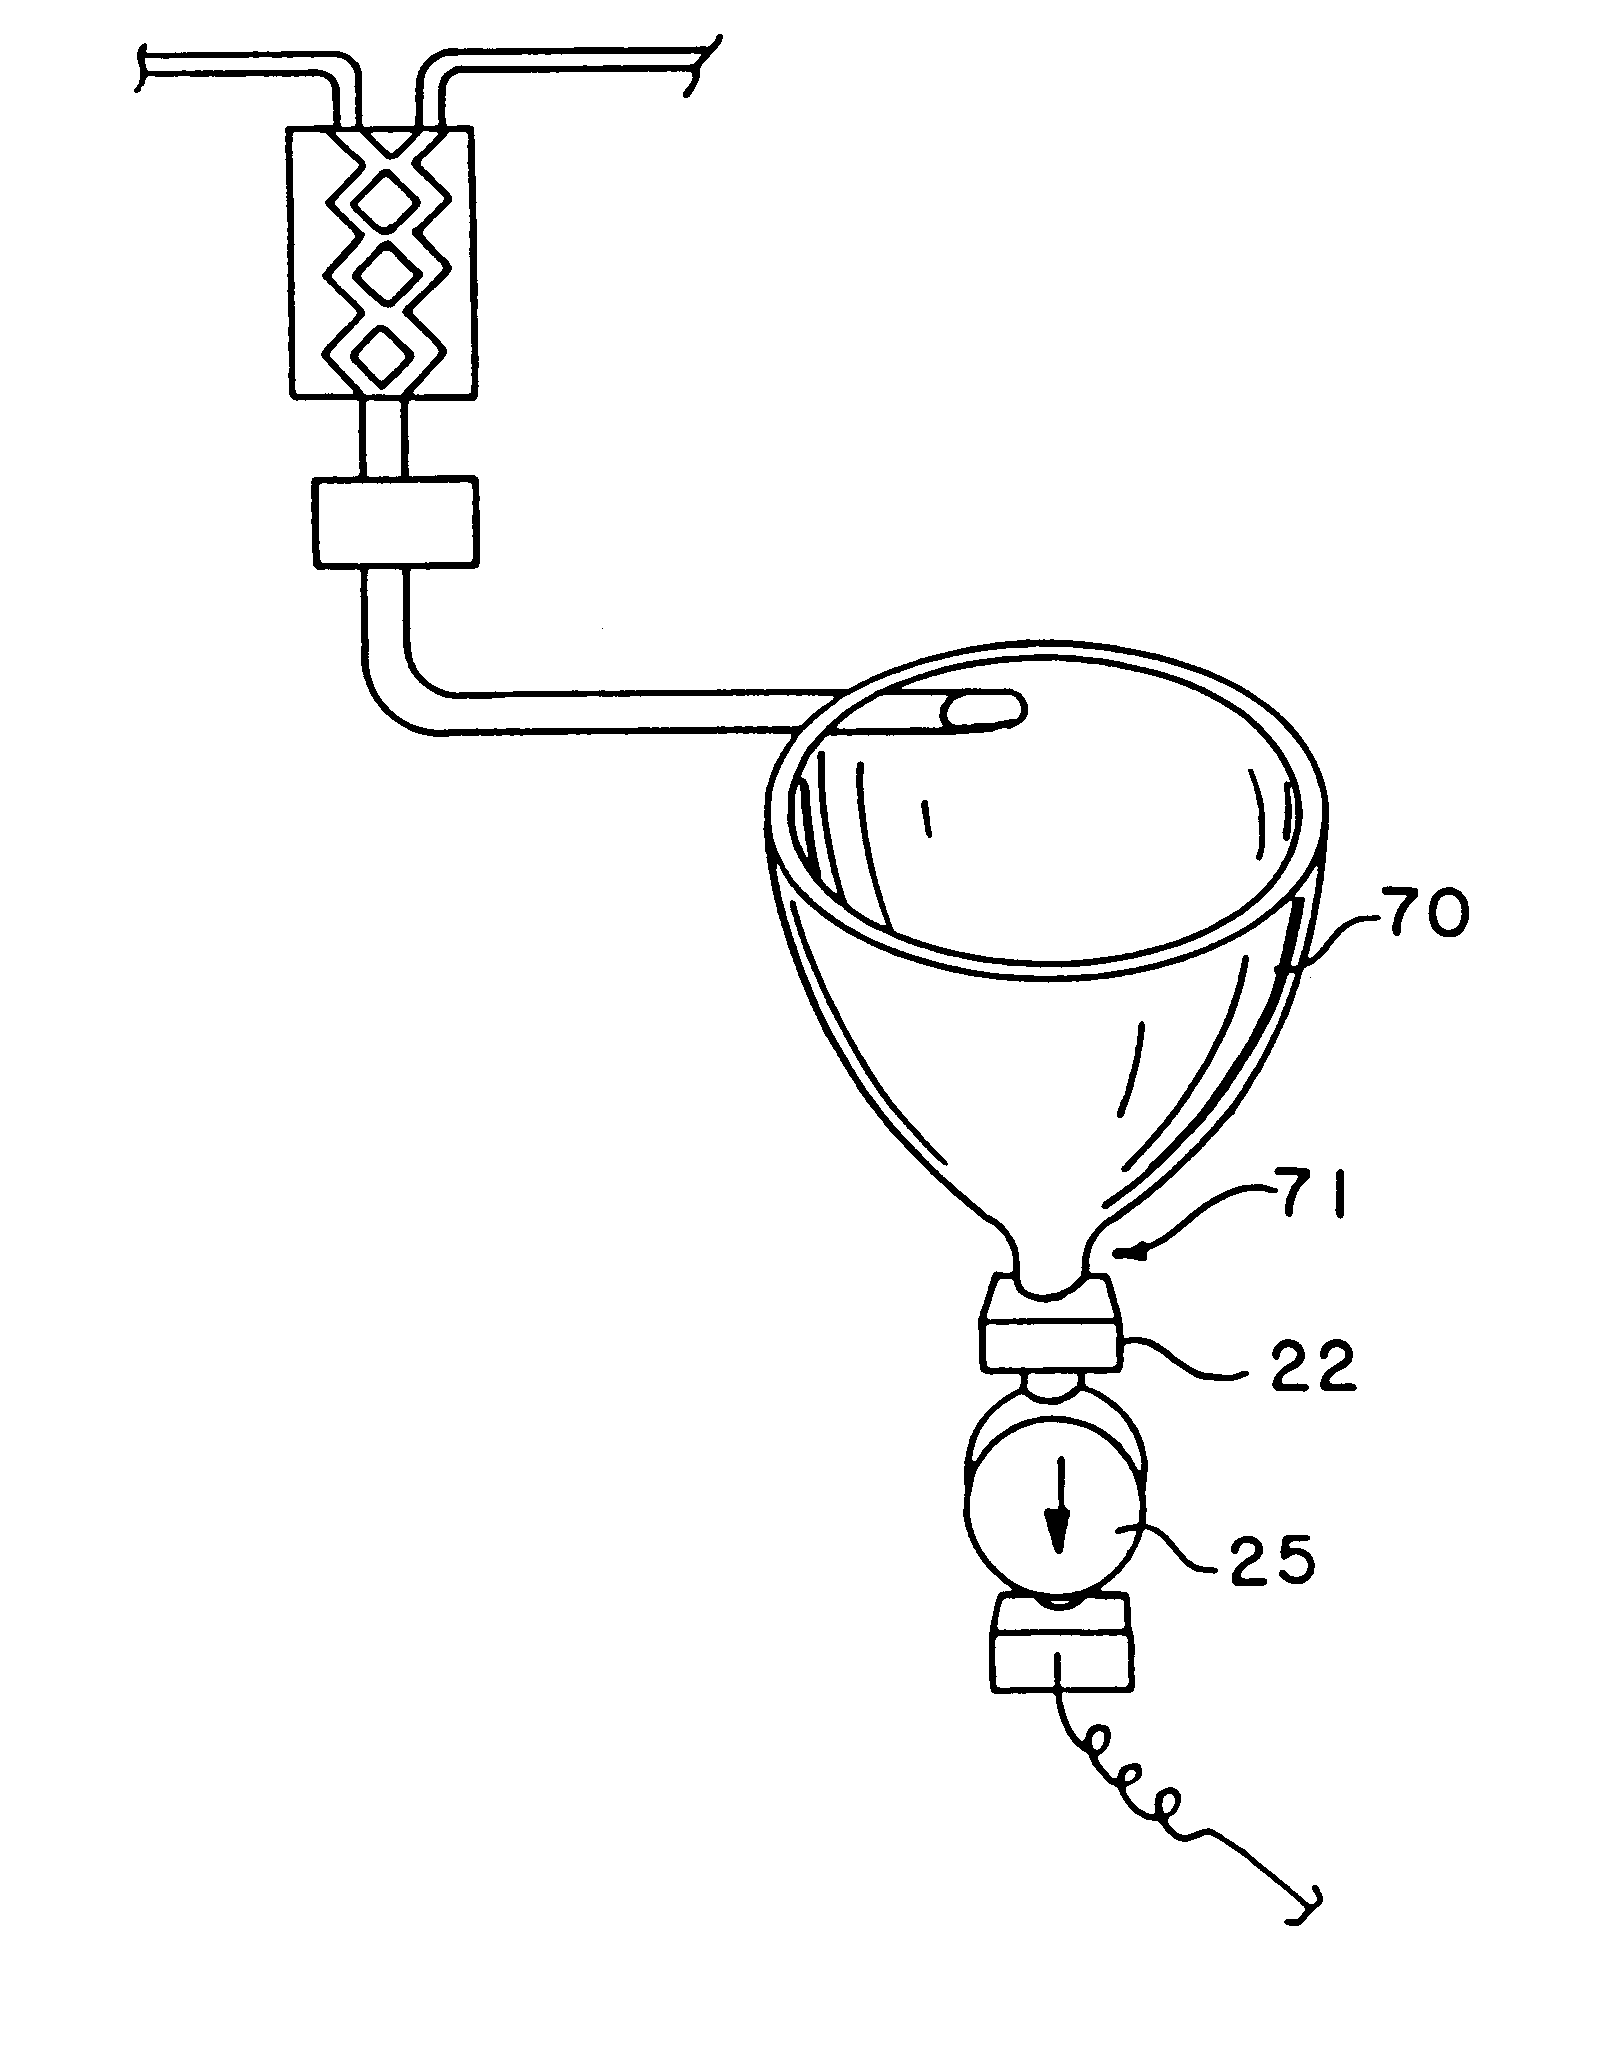 Multi-patient fluid dispensing